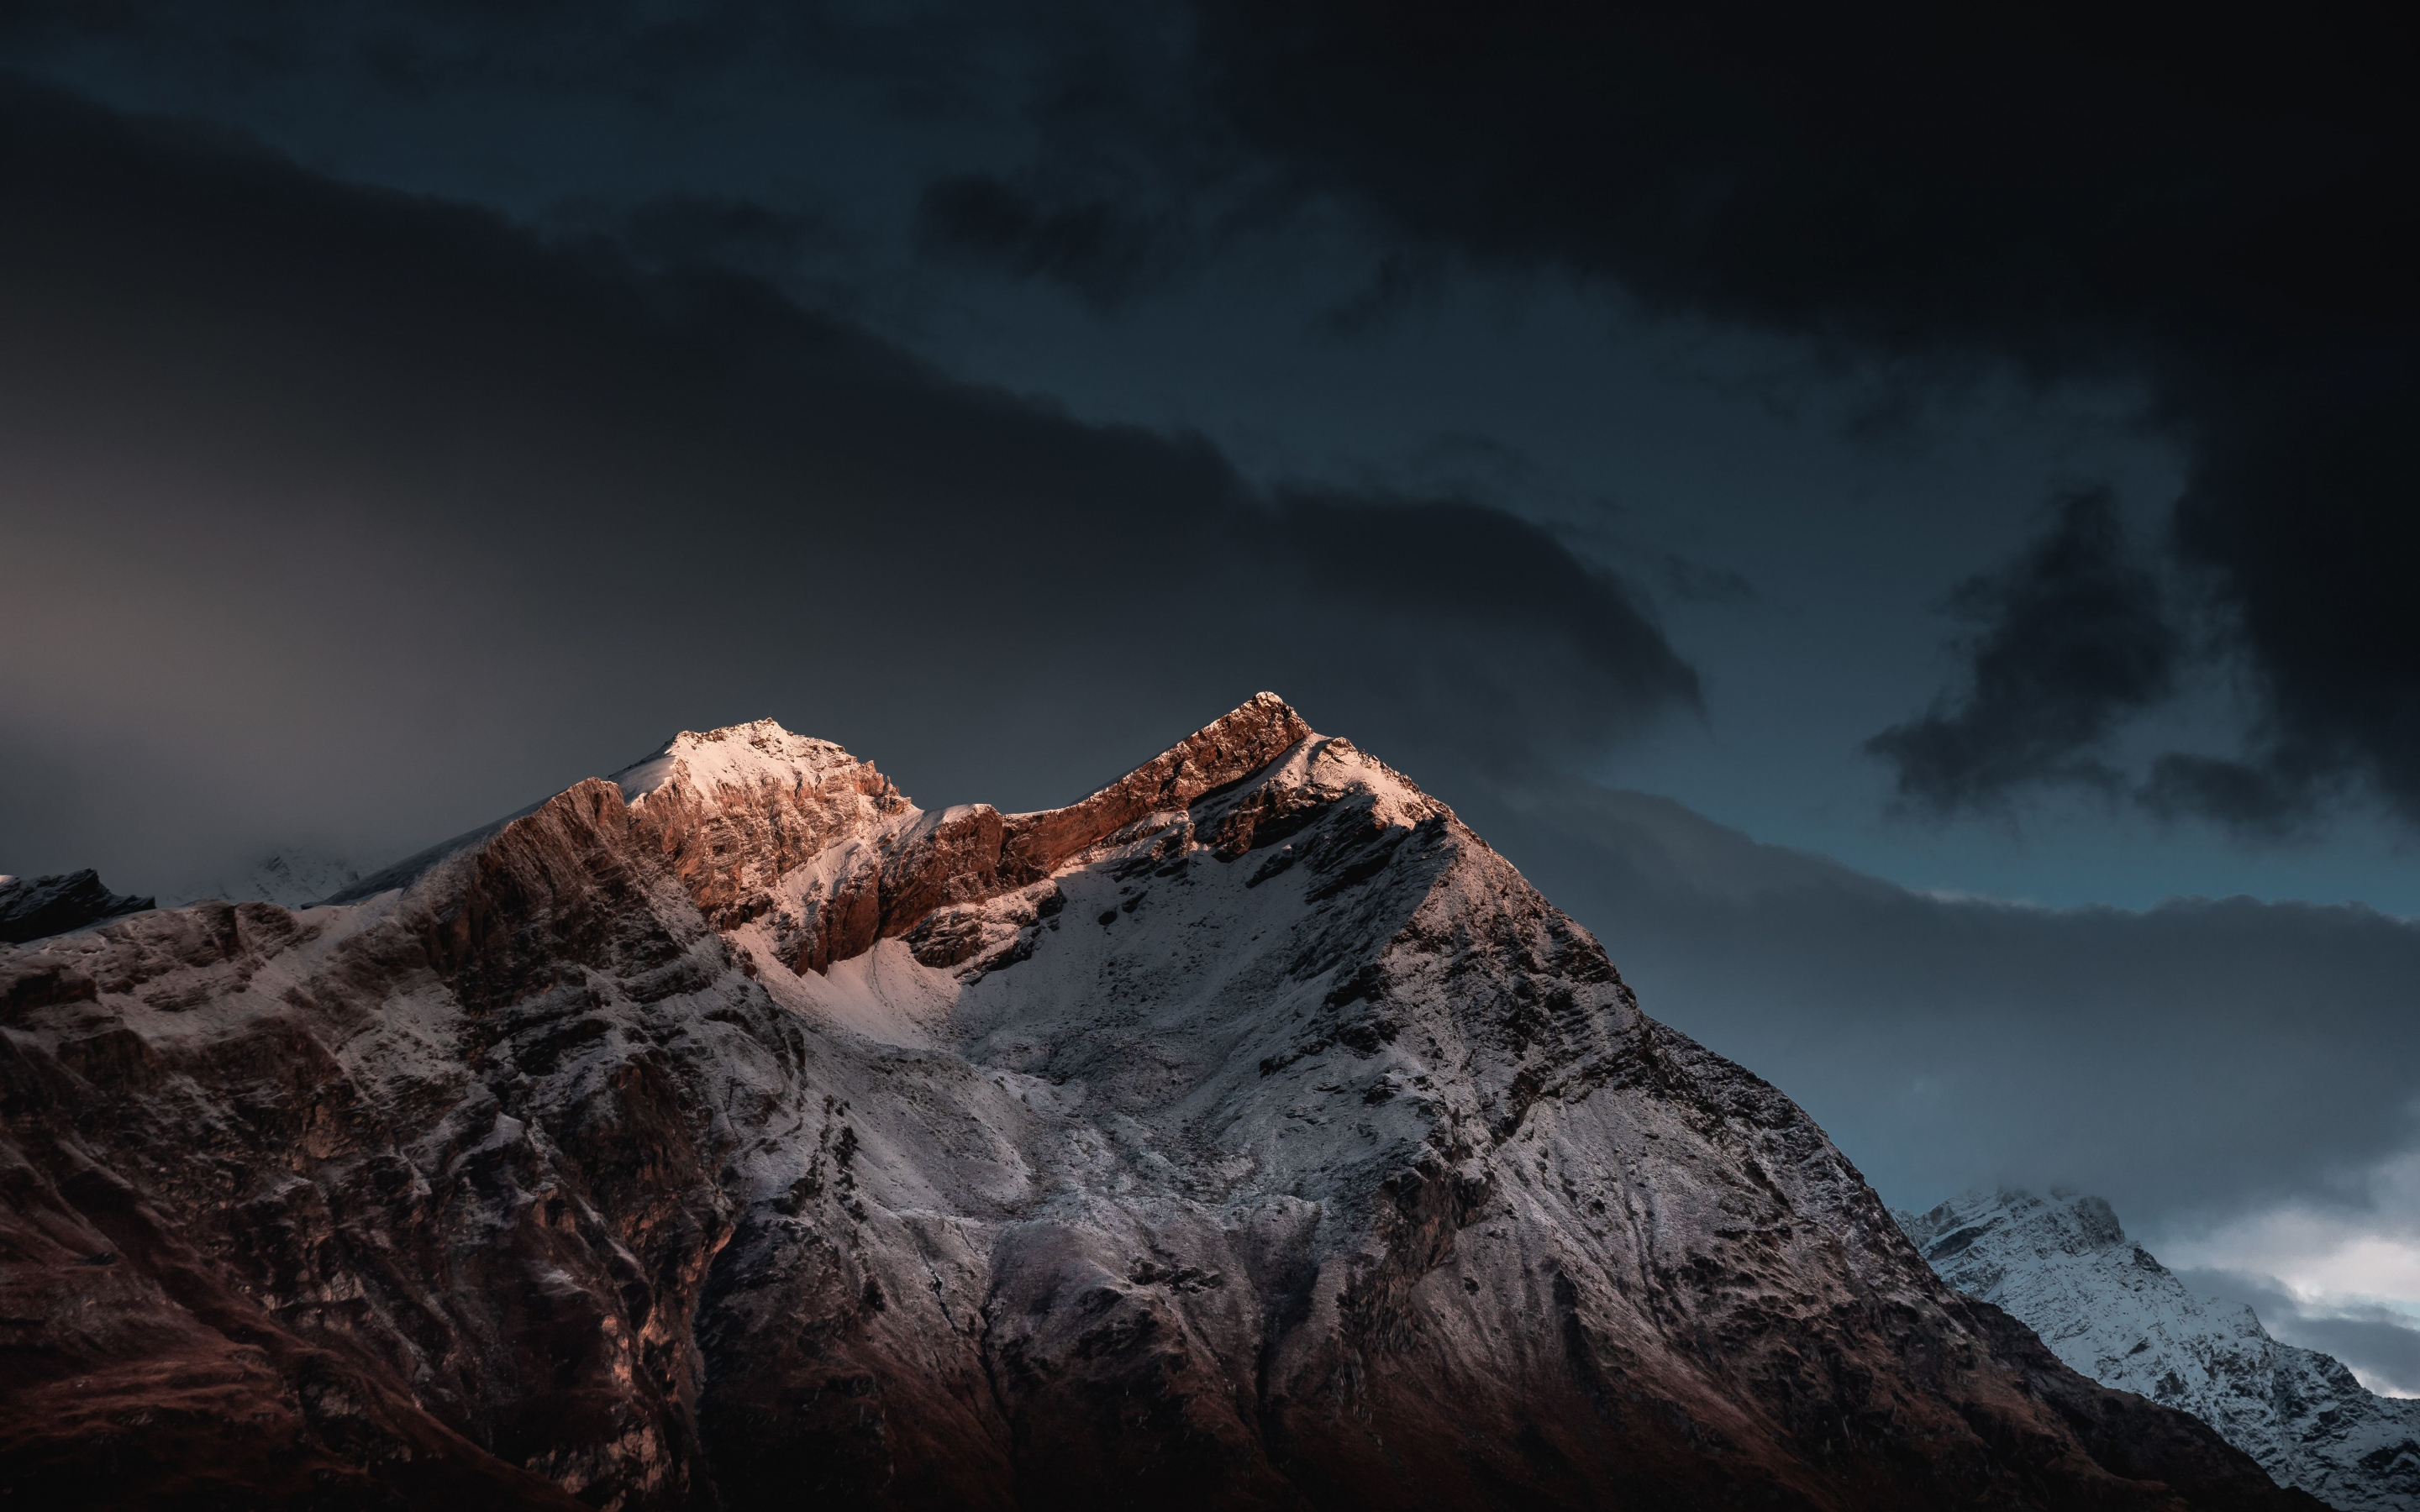 Shining peak, mountain, sunset, 2880x1800 wallpaper